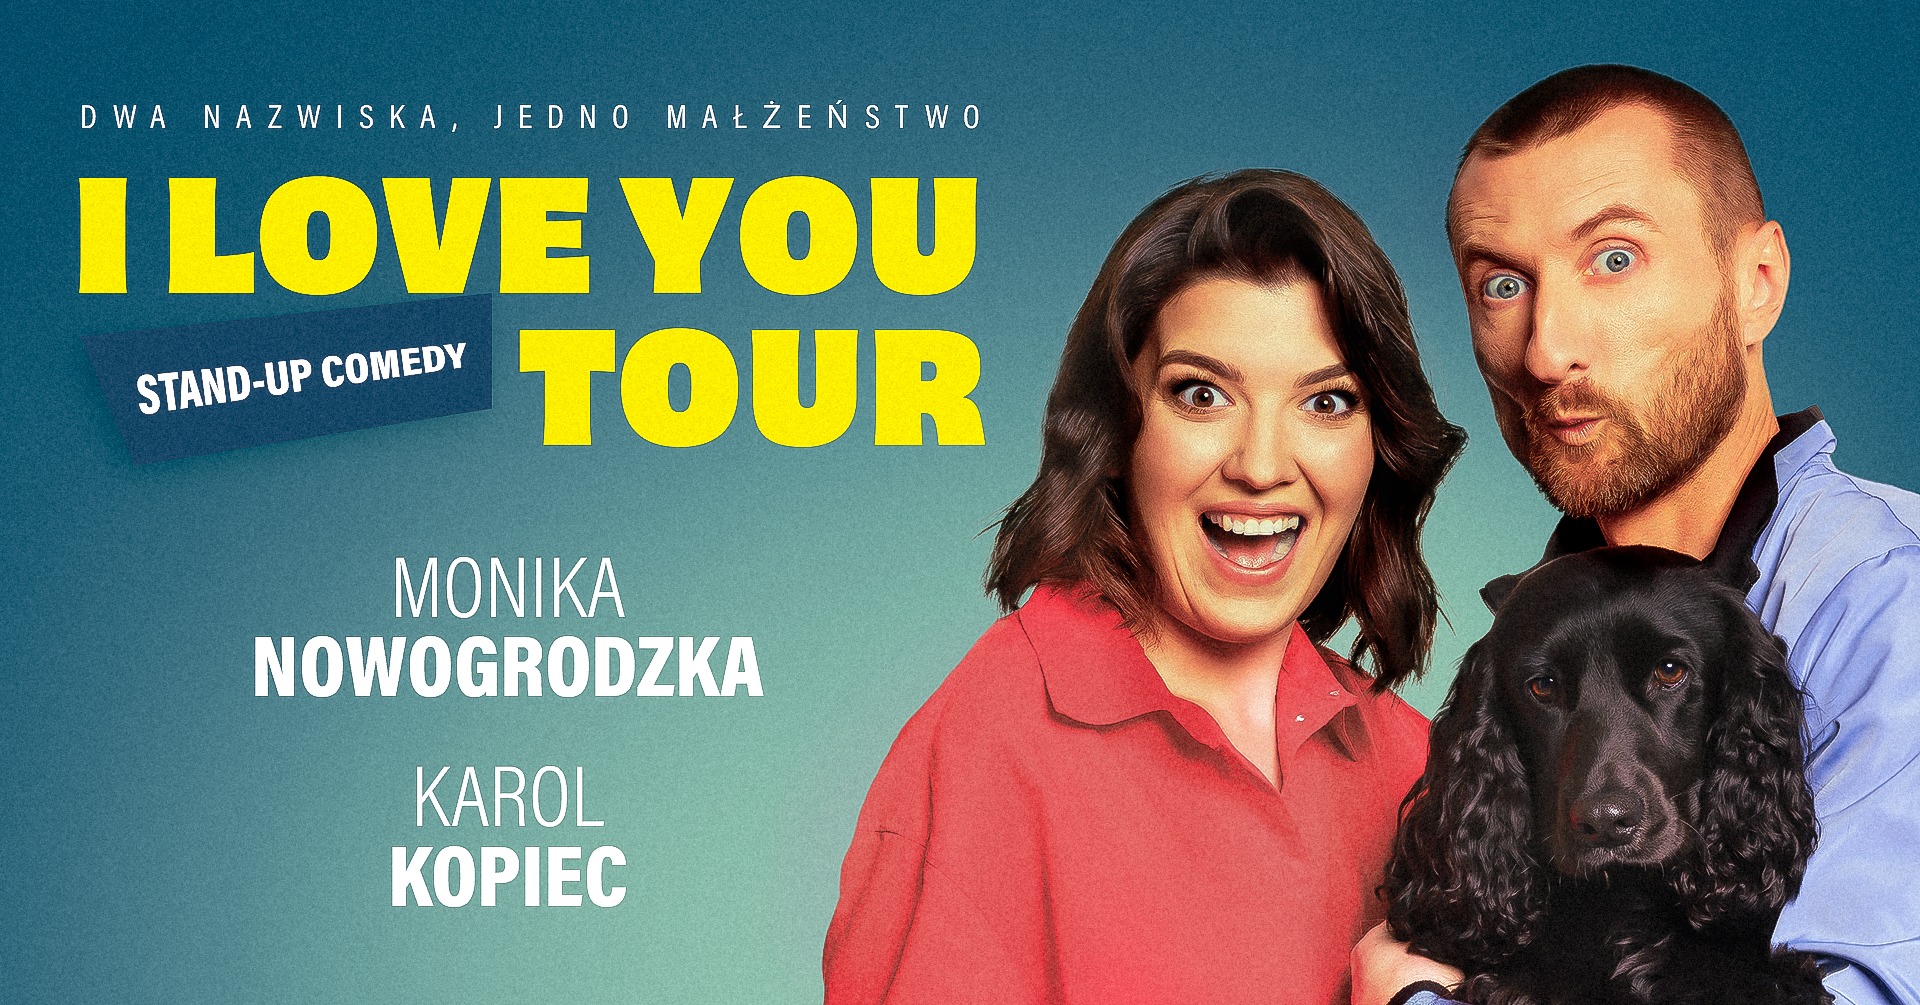 “i love you tour’ – kopiec/nowogrodzka – stand-up comedy